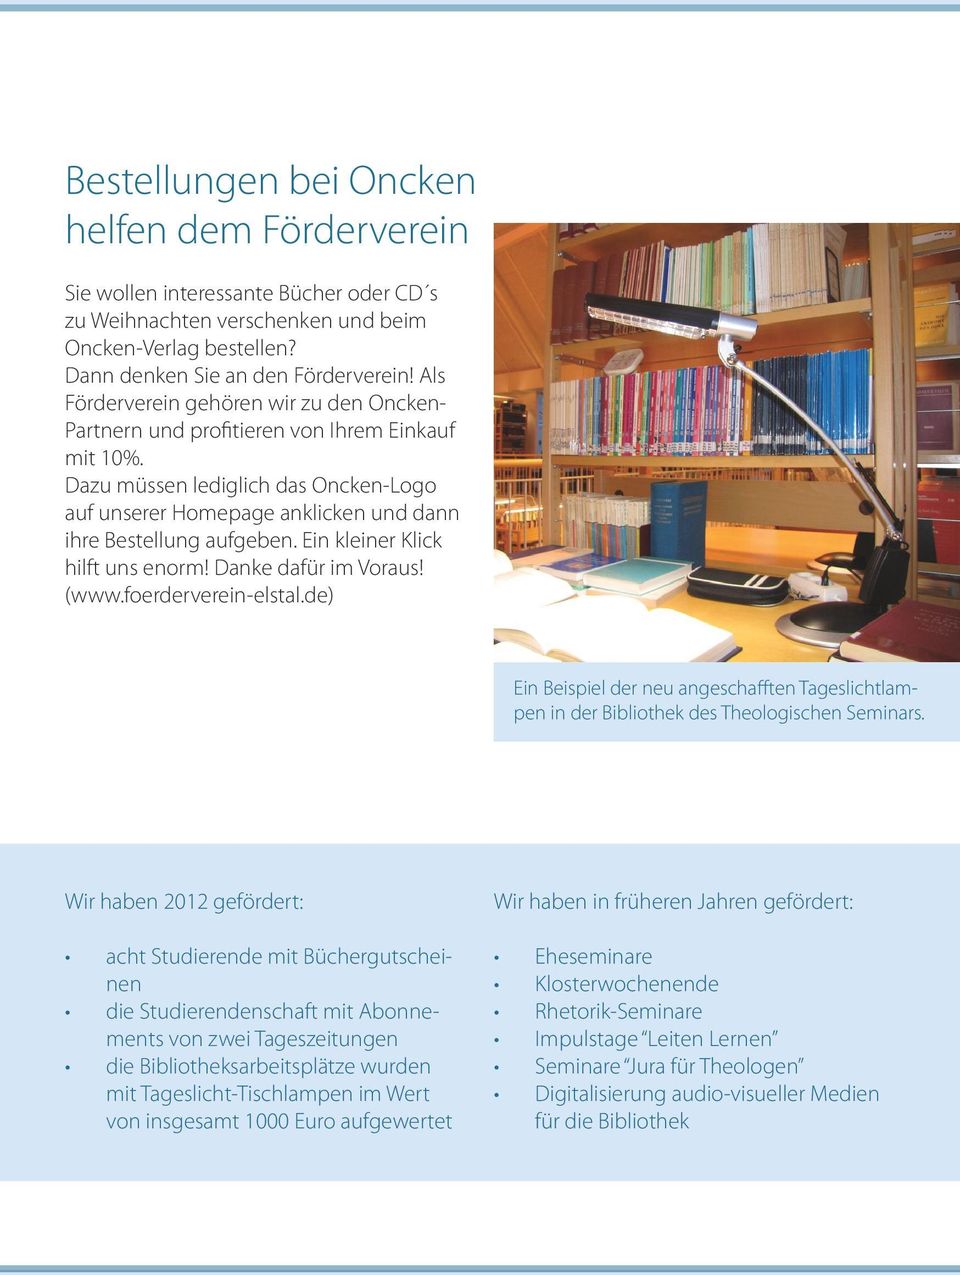 Ein kleiner Klick hilft uns enorm! Danke dafür im Voraus! (www.foerderverein-elstal.de) Ein Beispiel der neu angeschafften Tageslichtlampen in der Bibliothek des Theologischen Seminars.